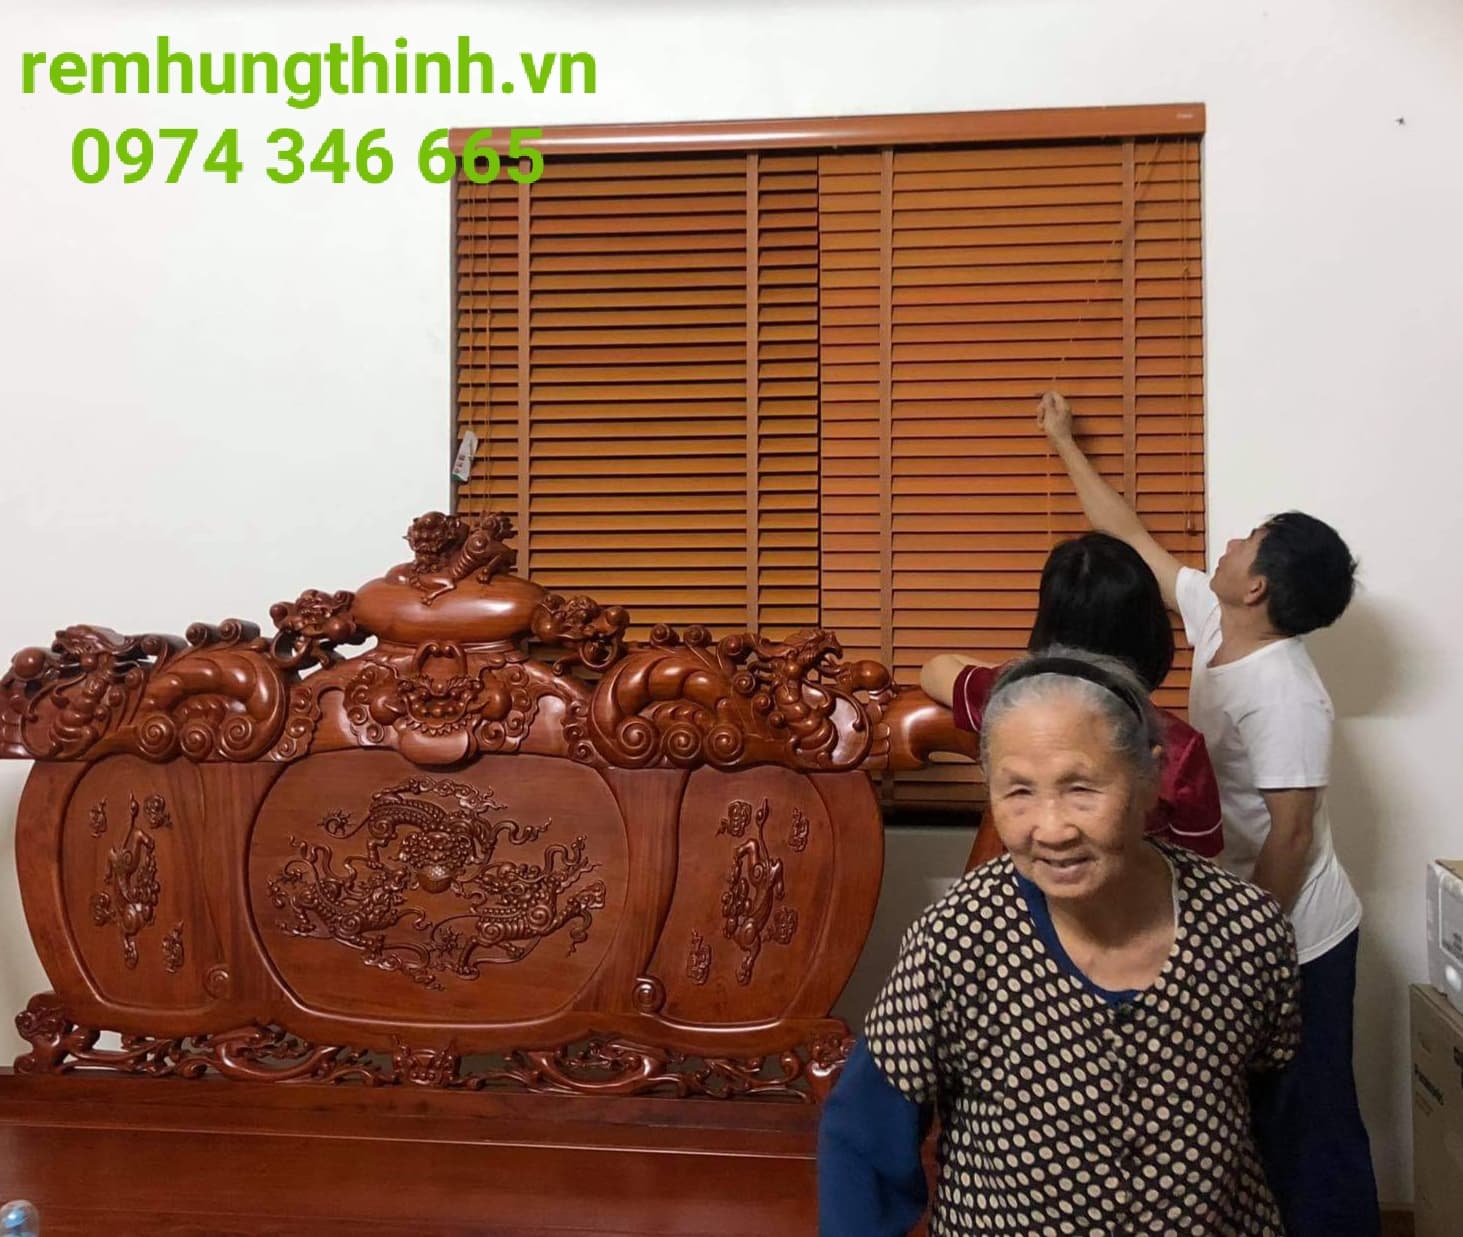 Rèm sáo gỗ được làm từ gỗ tự nhiên tại phường Thượng Đình quận Thanh Xuân, Hà Nội